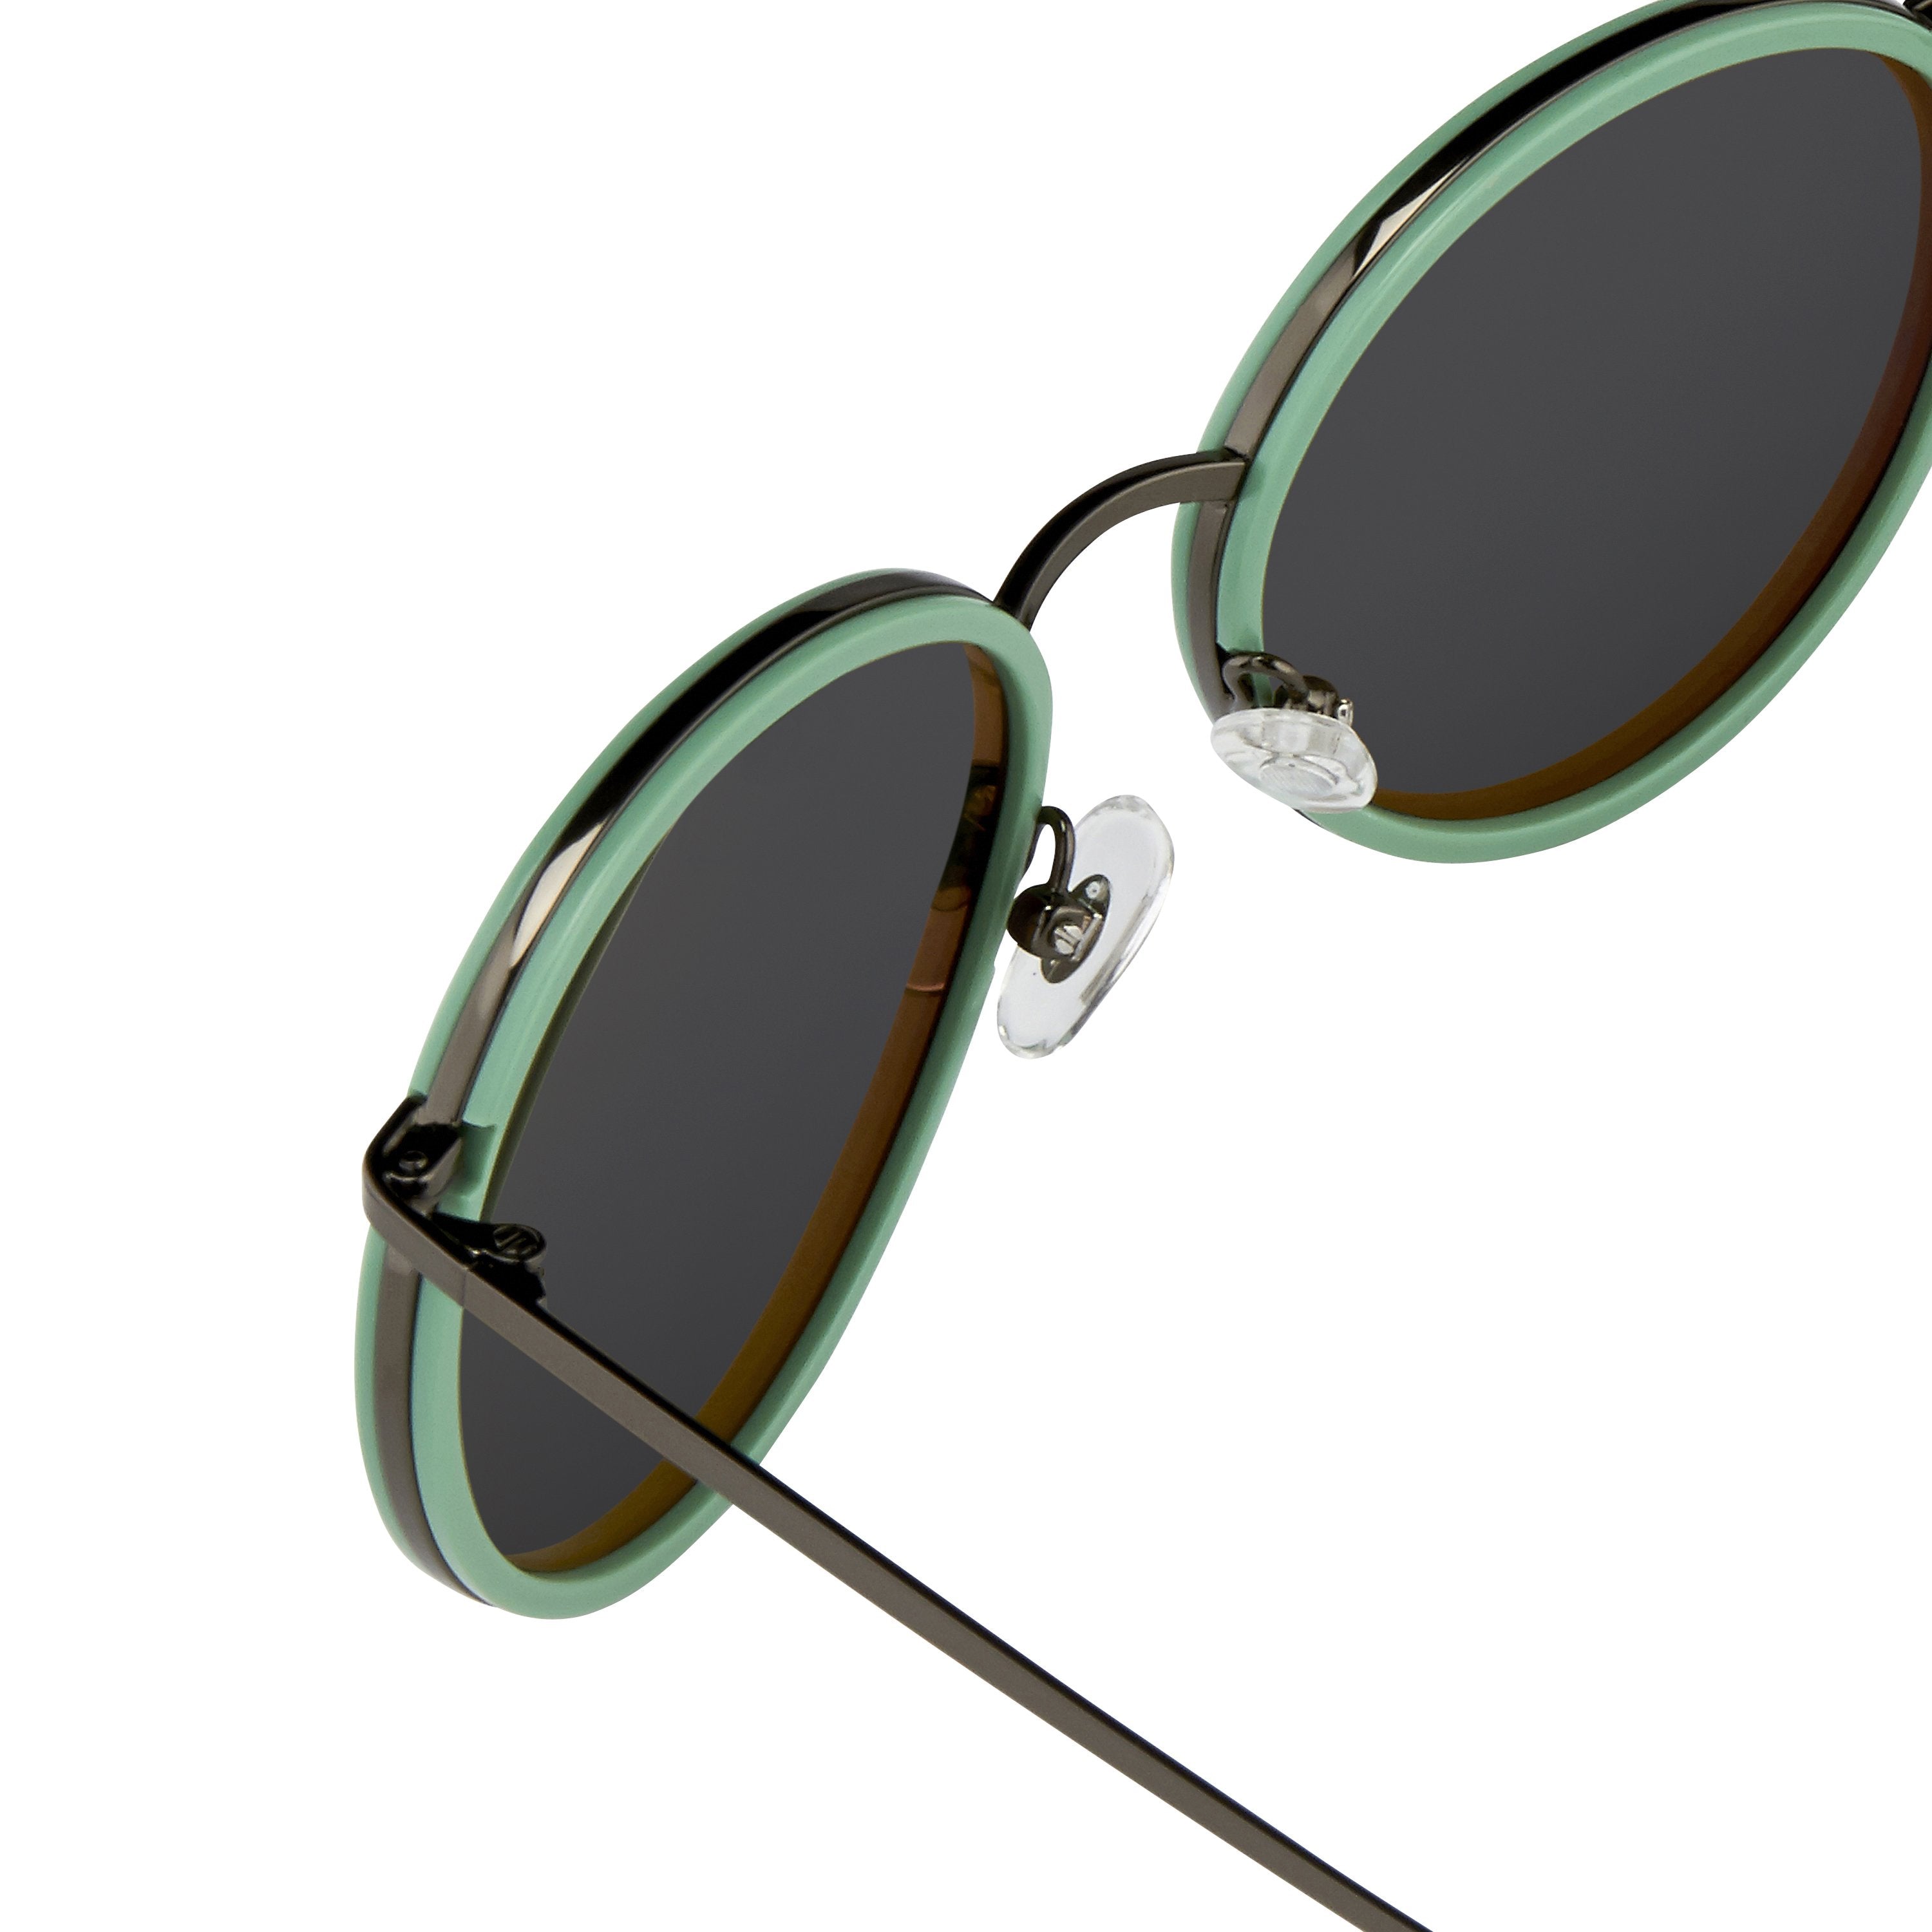 Color_DVN95C1SUN - Dries van Noten 95 C1 Oval Sunglasses